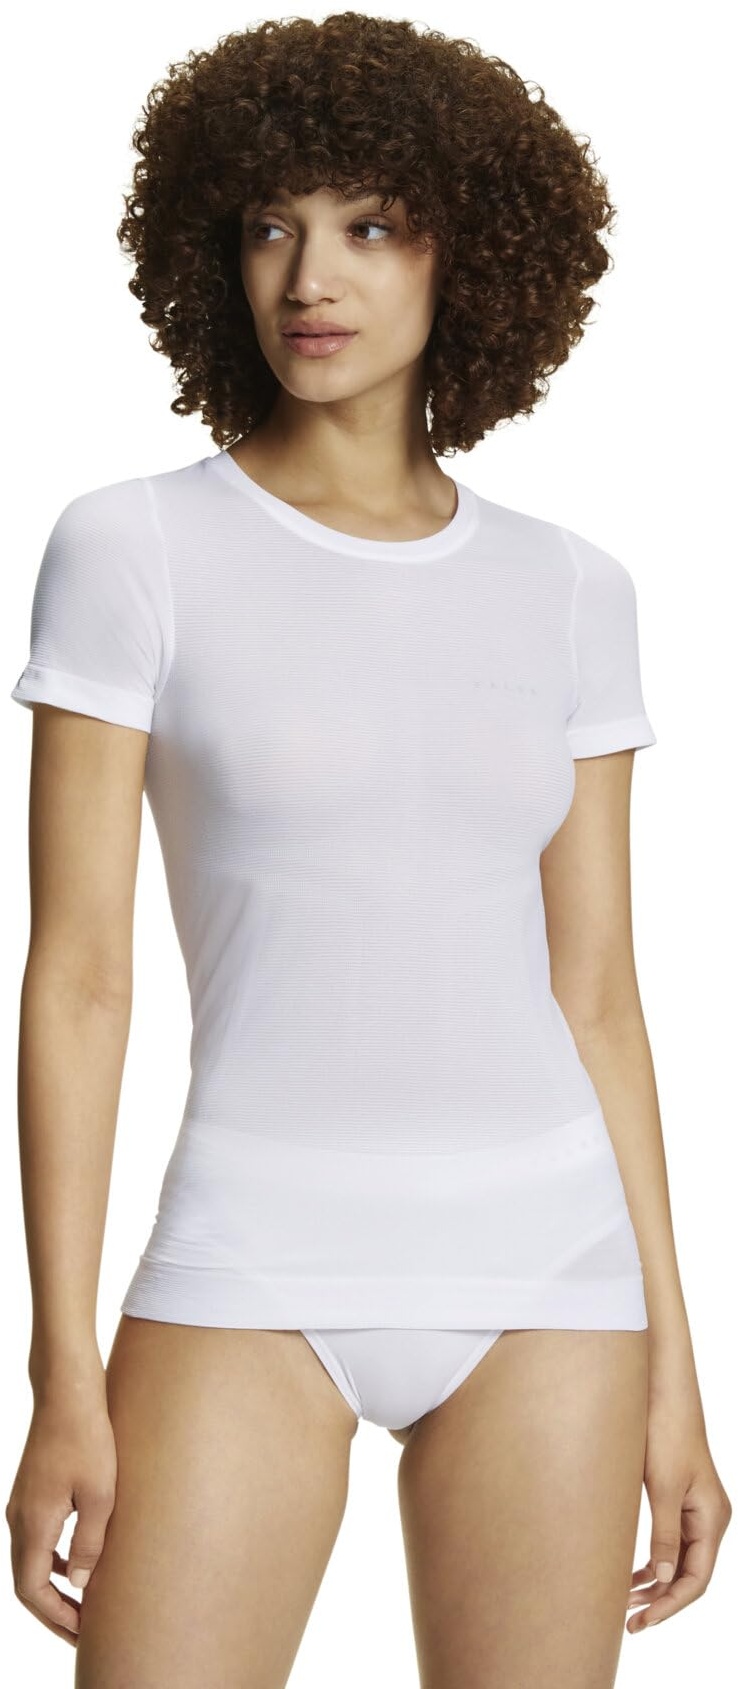 FALKE Damen Baselayer-Shirt Ultralight Cool Round Neck W S/S SH Funktionsmaterial Schnelltrocknend 1 Stück, Weiß (White 2860), XL